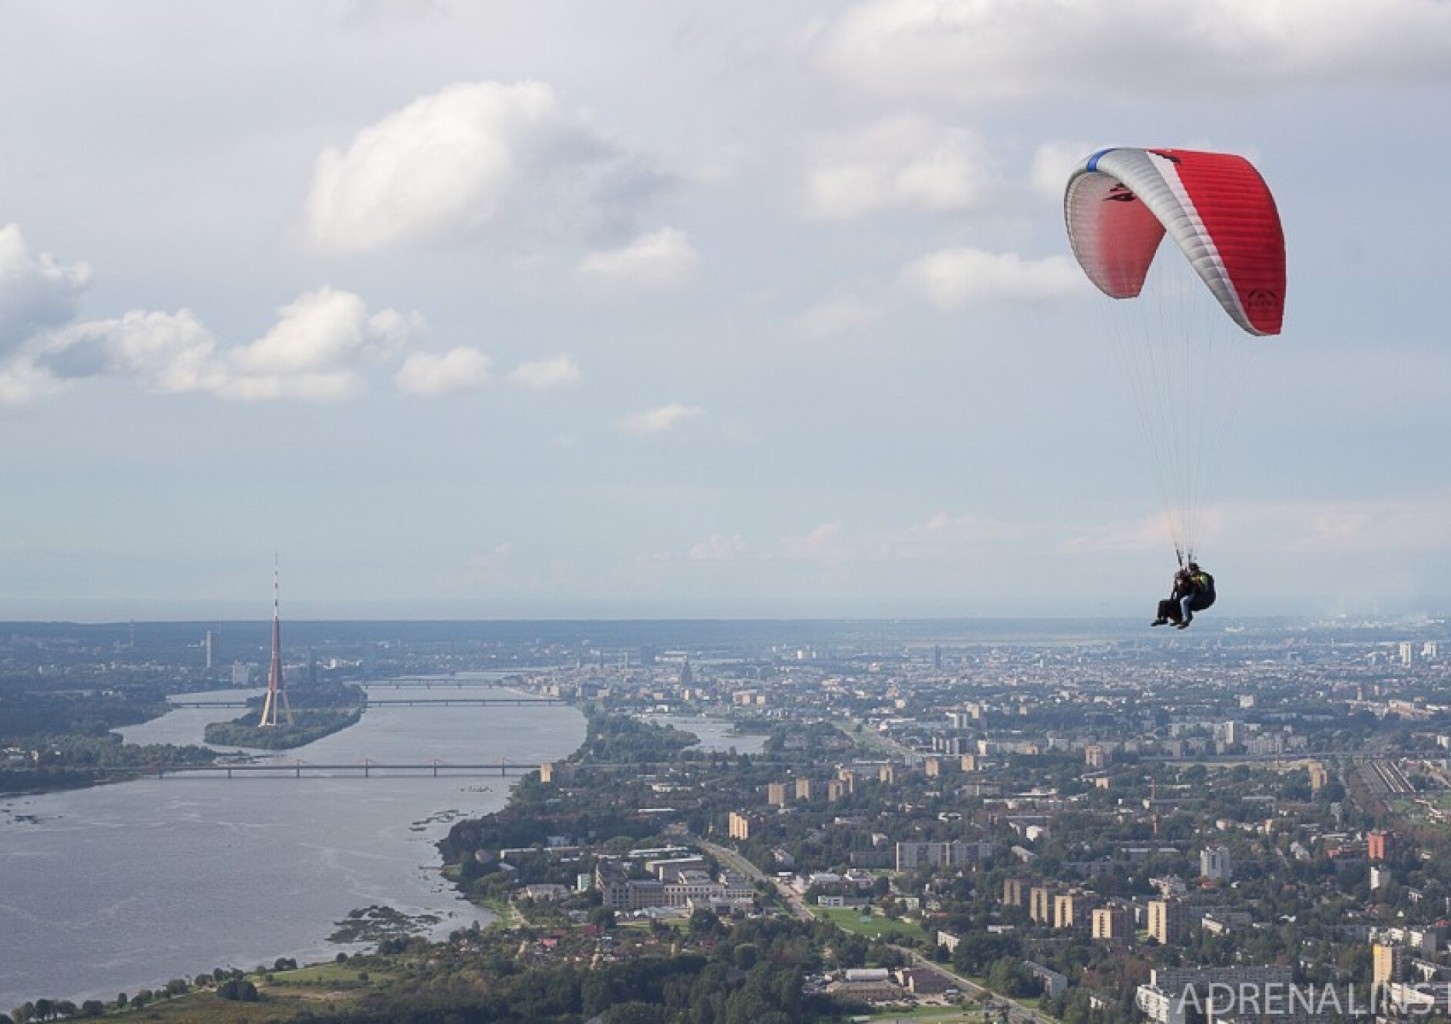 Tandeminis skrydis parasparniu Latvijoje su instruktoriumi + VIDEO 